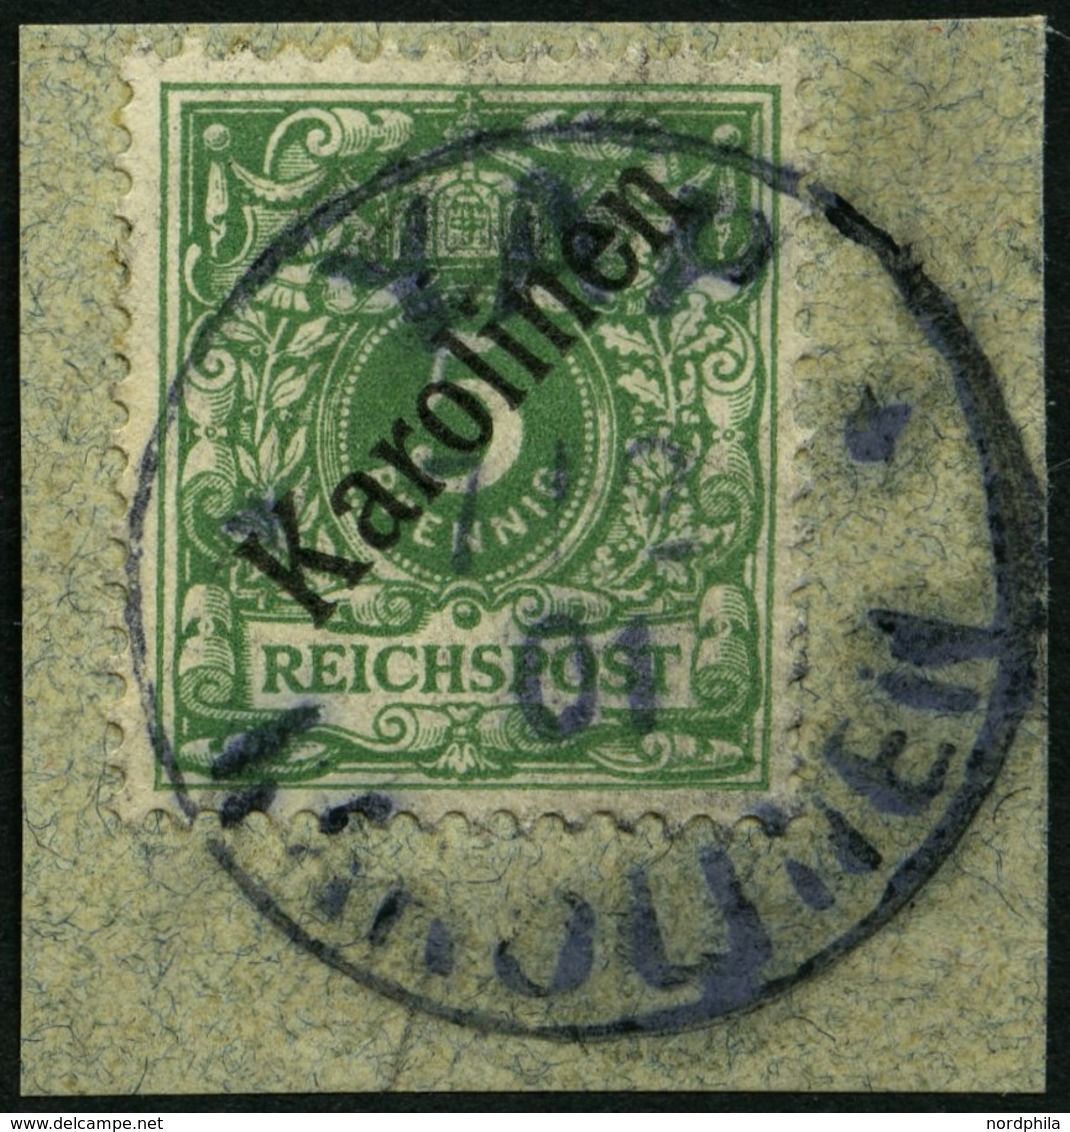 KAROLINEN 2I BrfStk, 1899, 5 Pf. Diagonaler Aufdruck, Stempel YAP, Prachtbriefstück, Gepr. Pfenninger, Mi. (750.-) - Caroline Islands